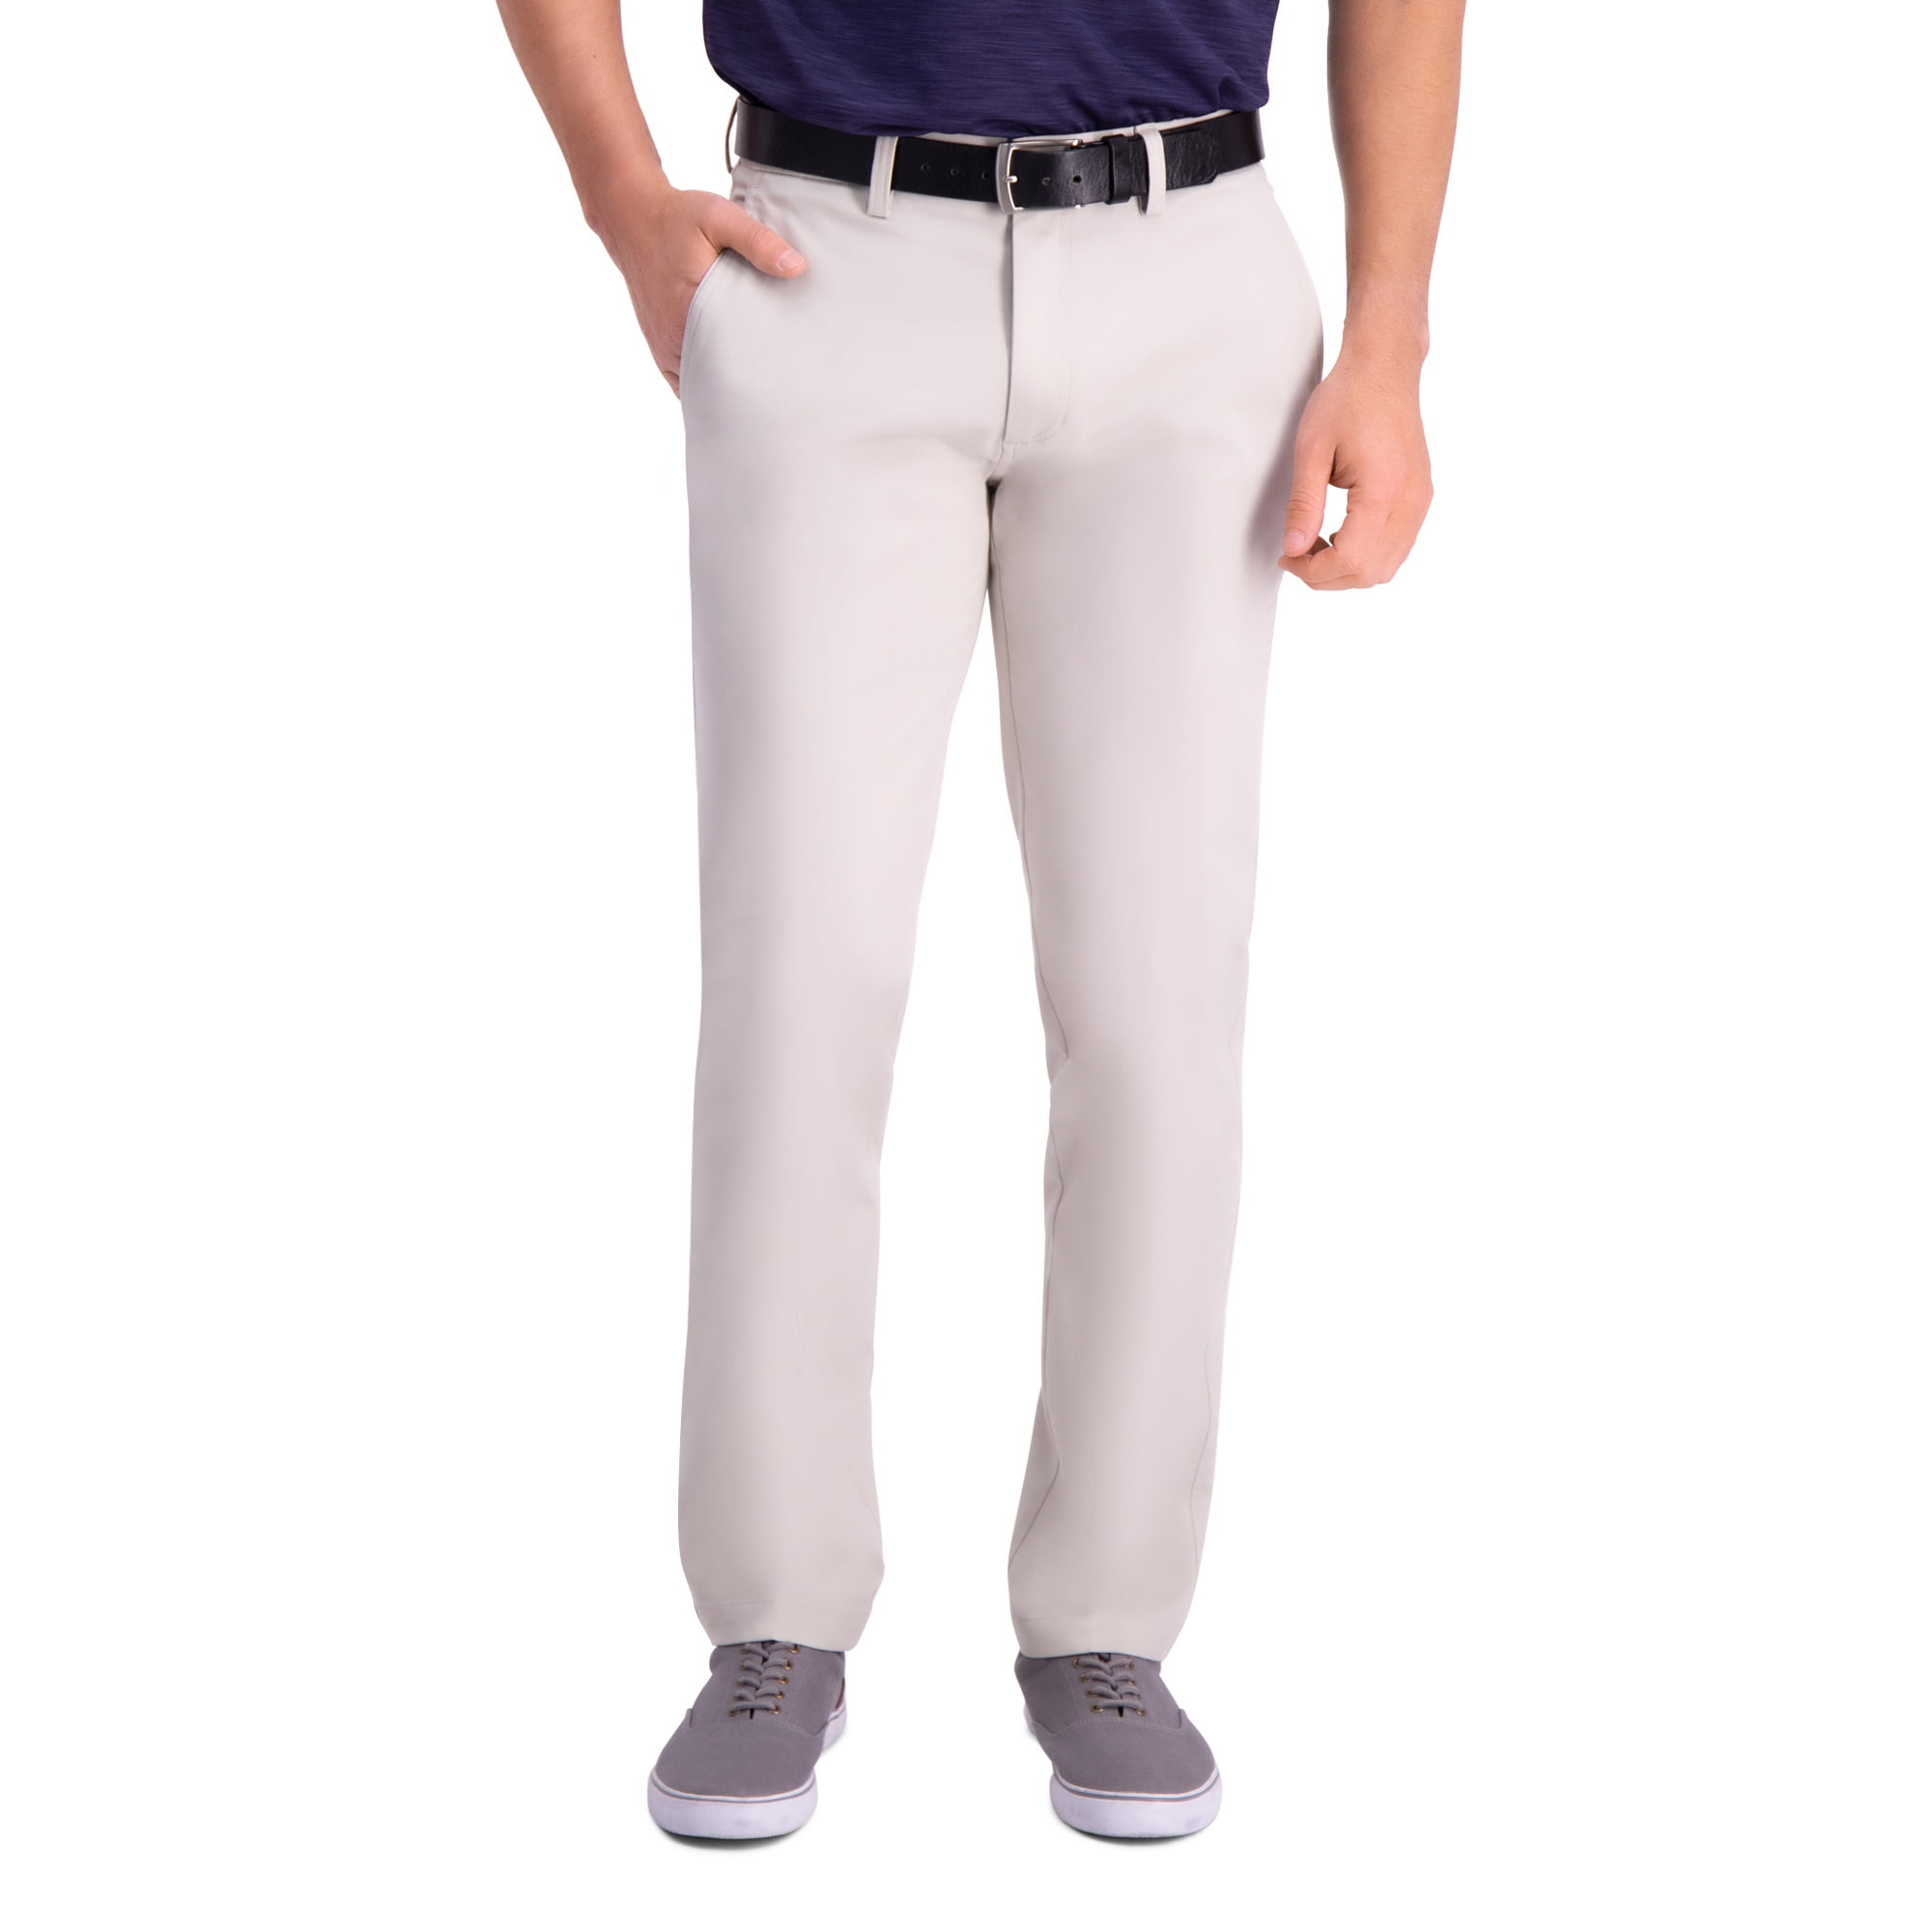 Haggar - Premium Comfort Khaki Pant Slim Fit HC80453 - Walmart.com ...